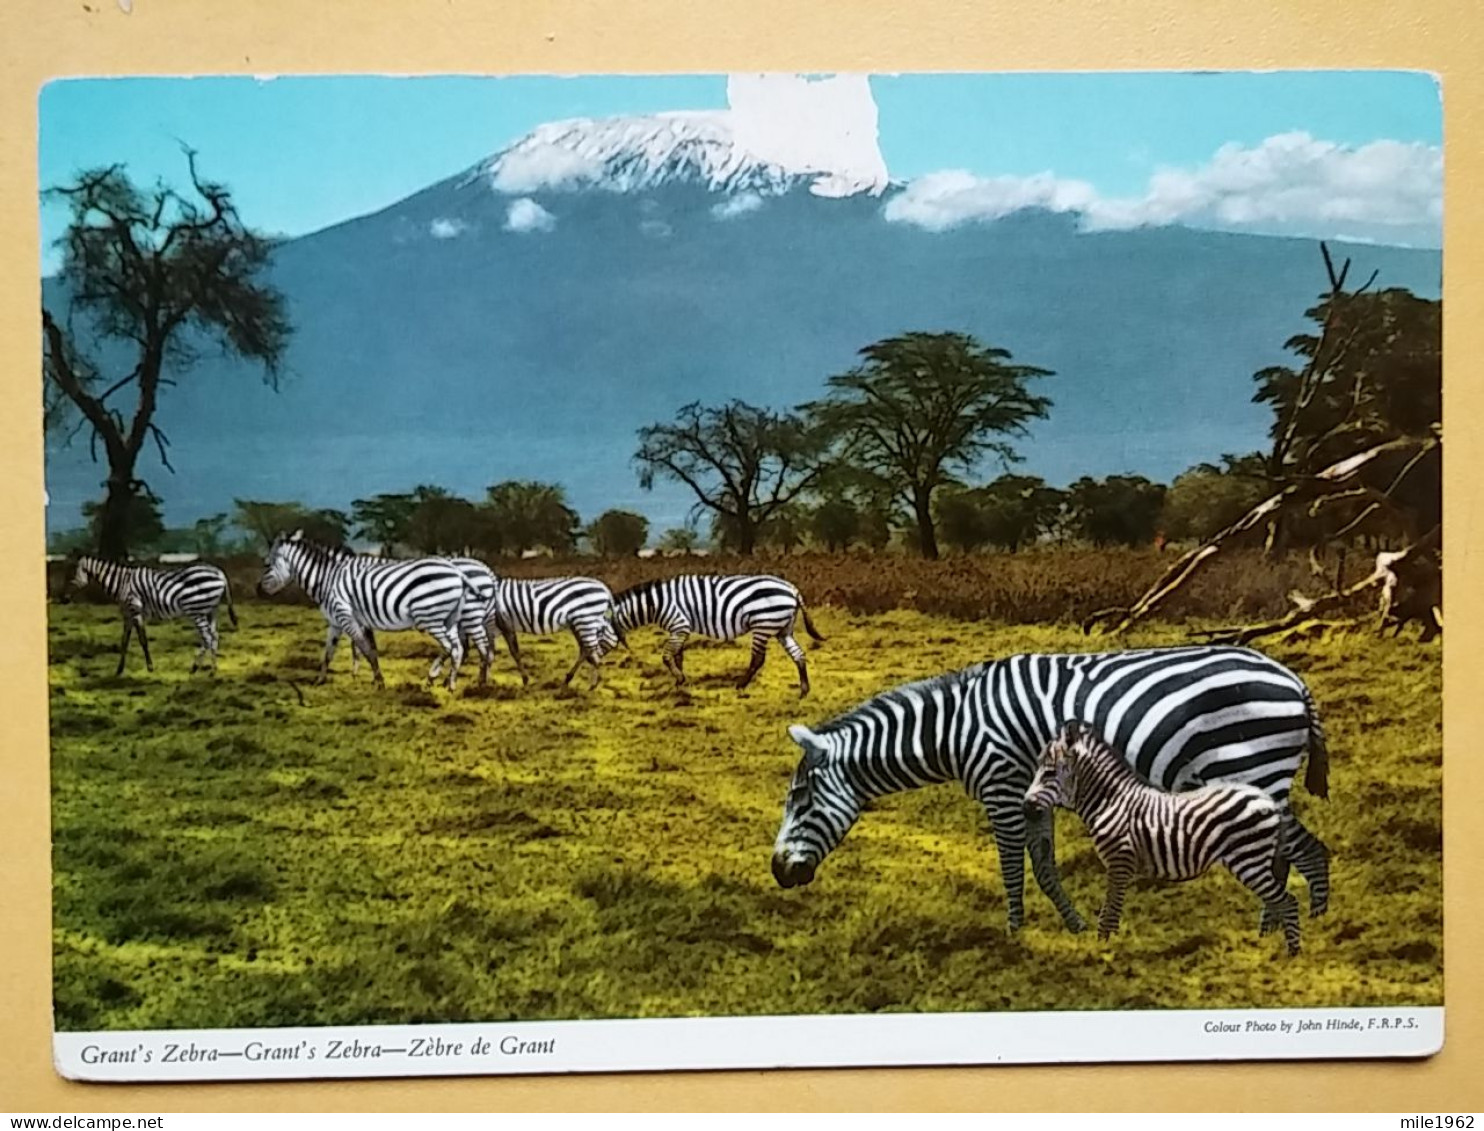 KOV 506-48 - ZEBRA, AFRICA - Zebras